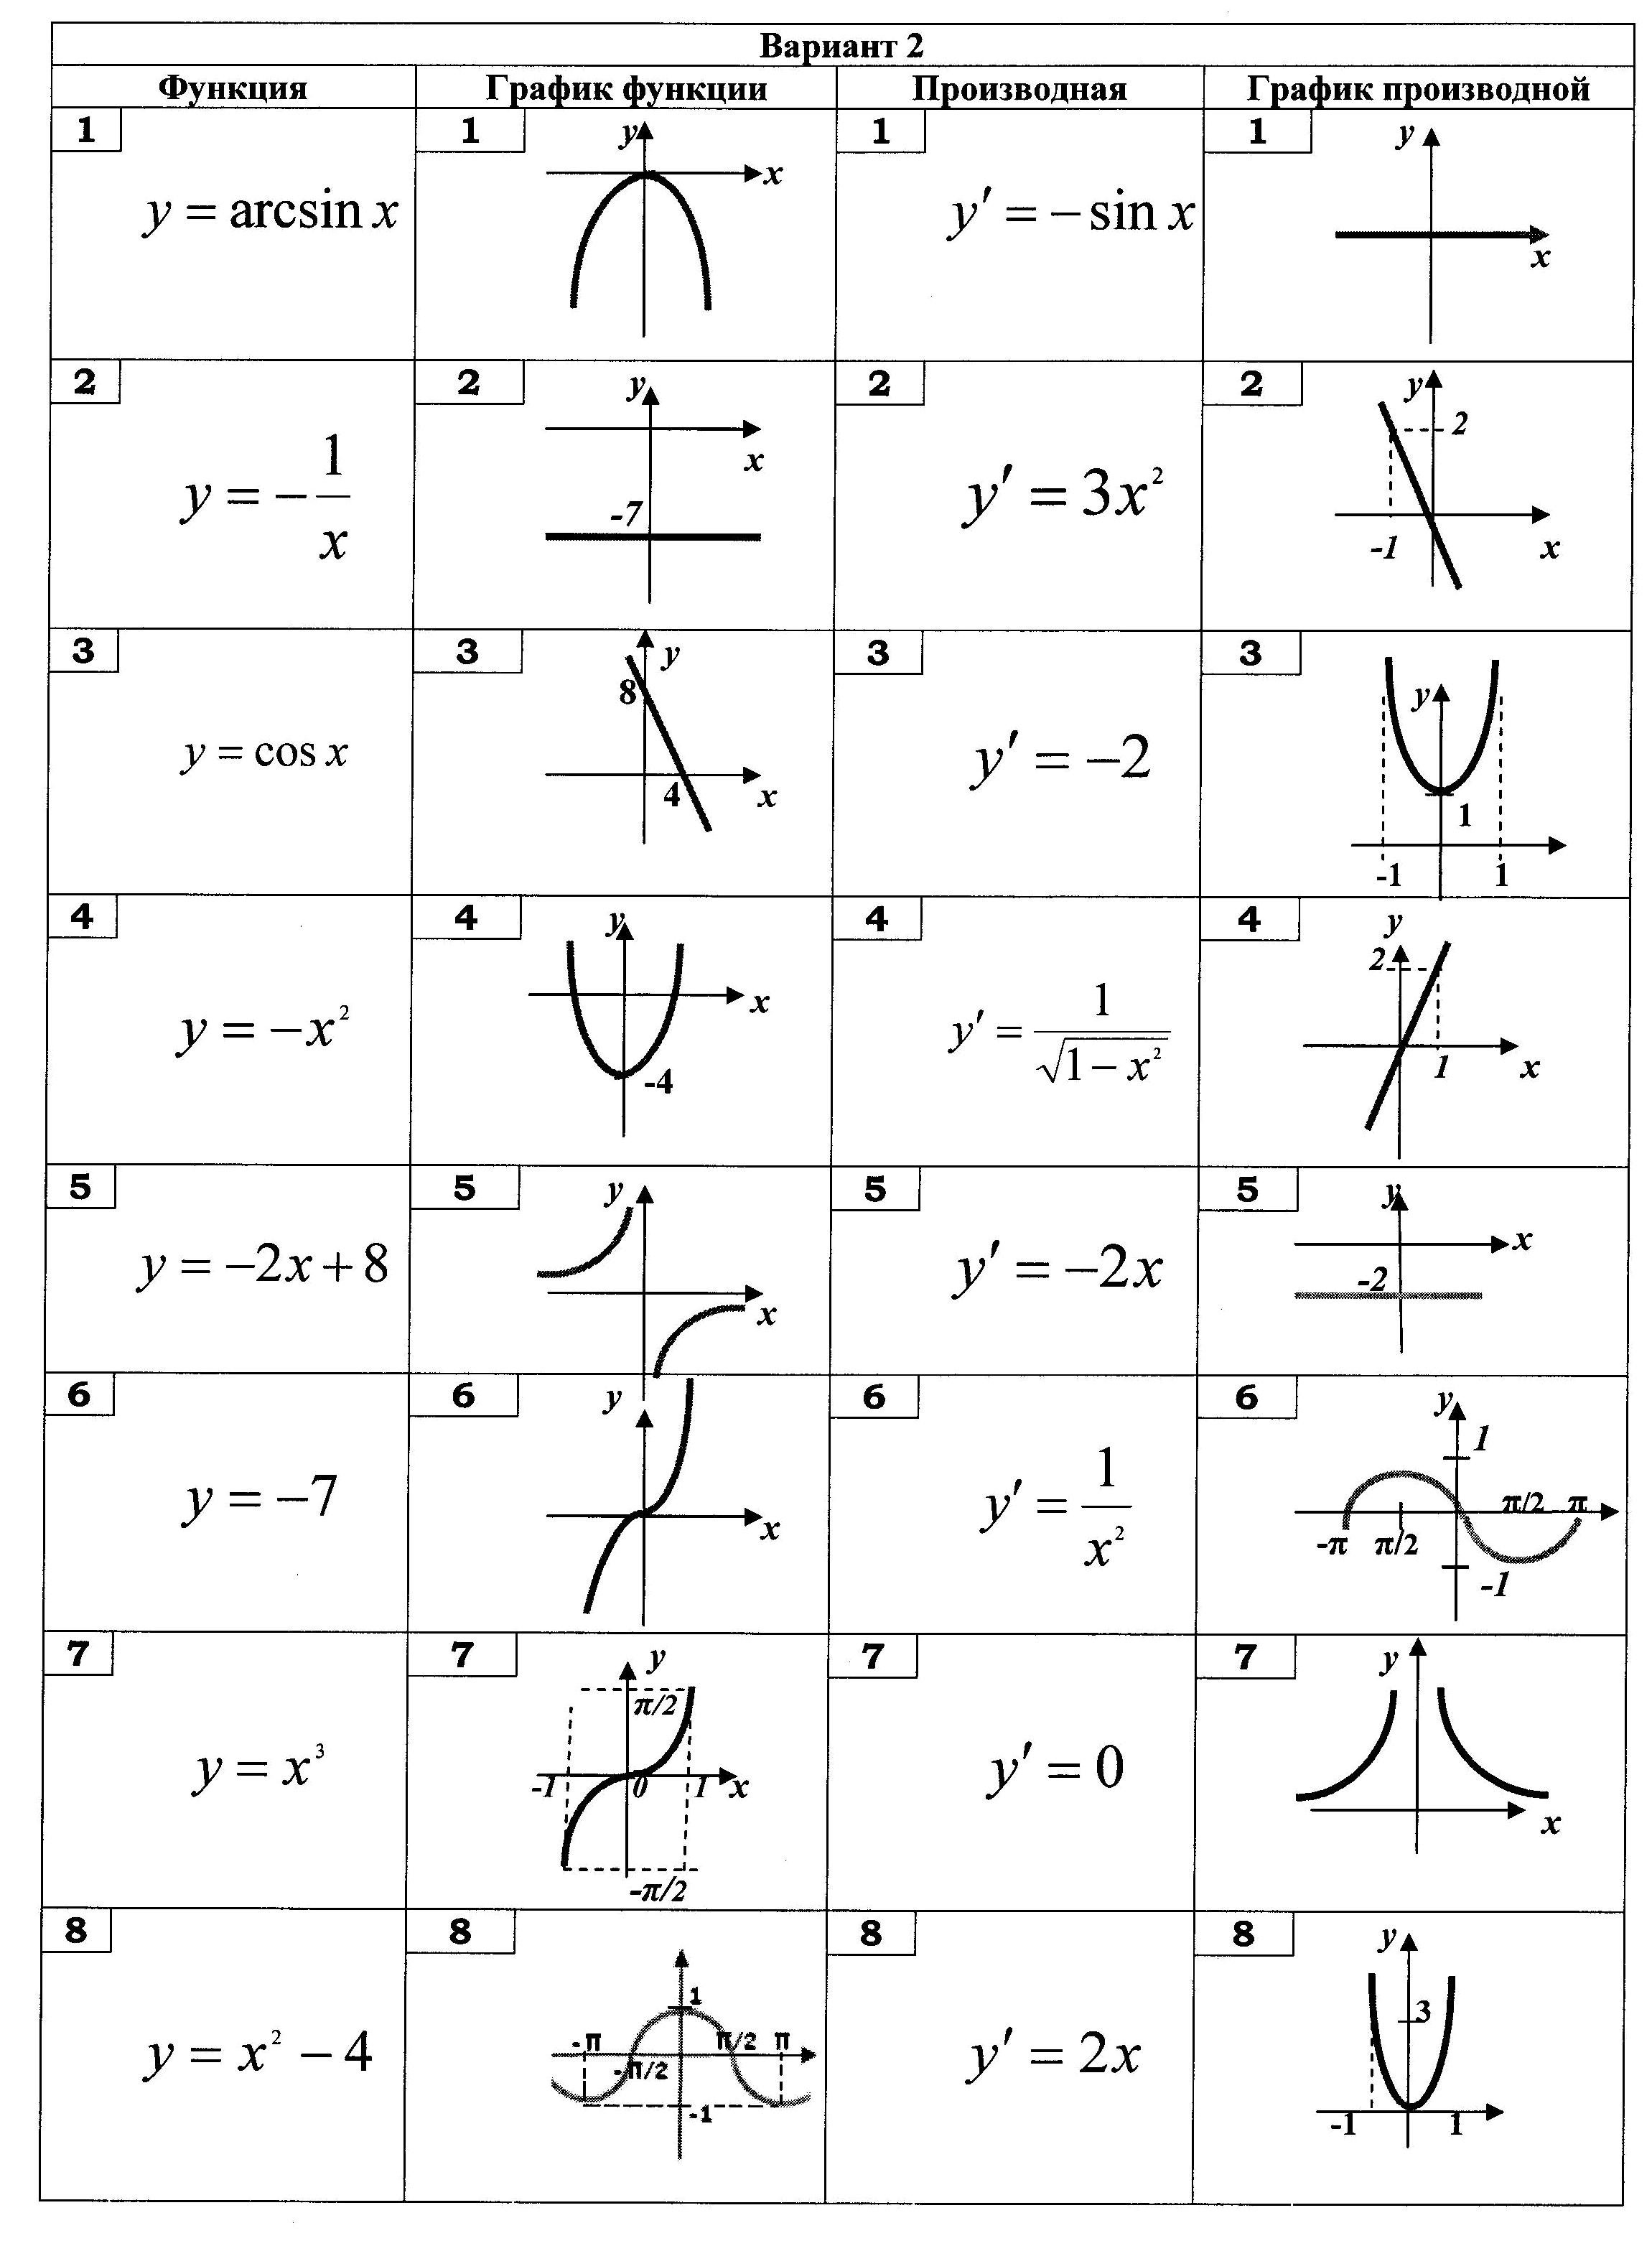 Название функции y. Таблица функций Алгебра. Виды функций и их графики таблица. Формулы графиков функций 11 класс. Функции в алгебре и их графики.